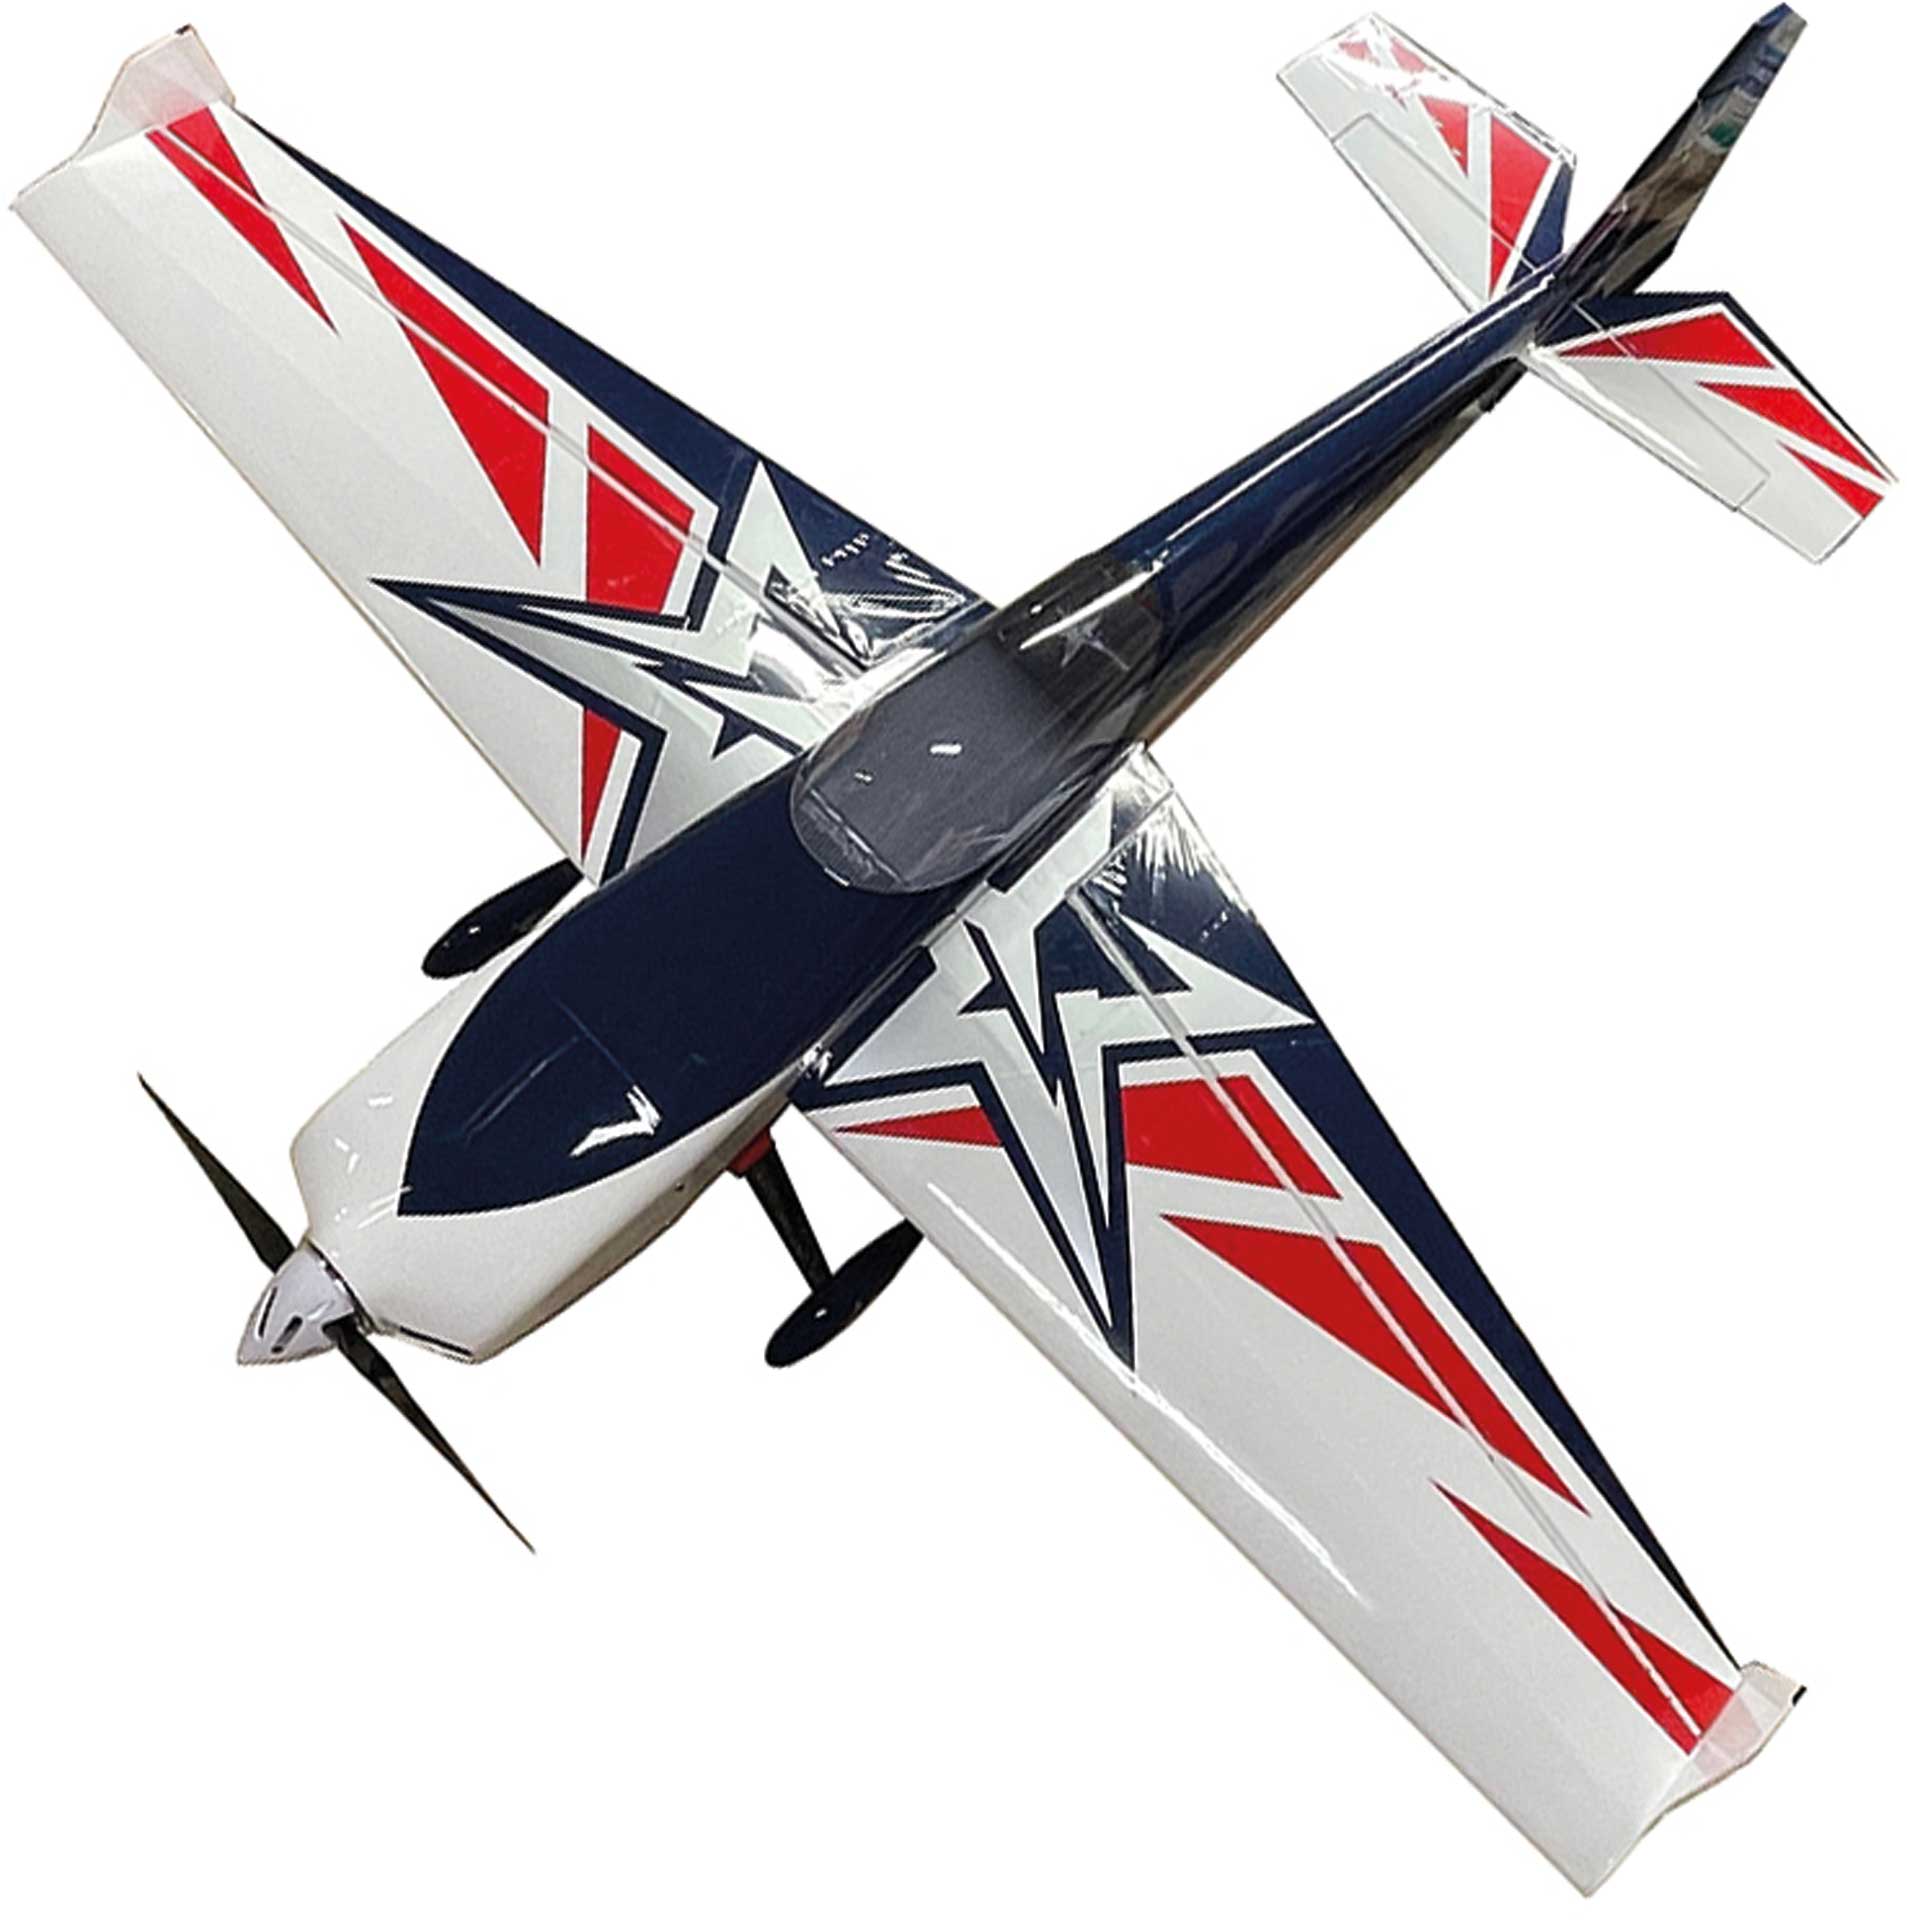 AJ AIRCRAFT Slick 74" 540 ARF aerobatic model